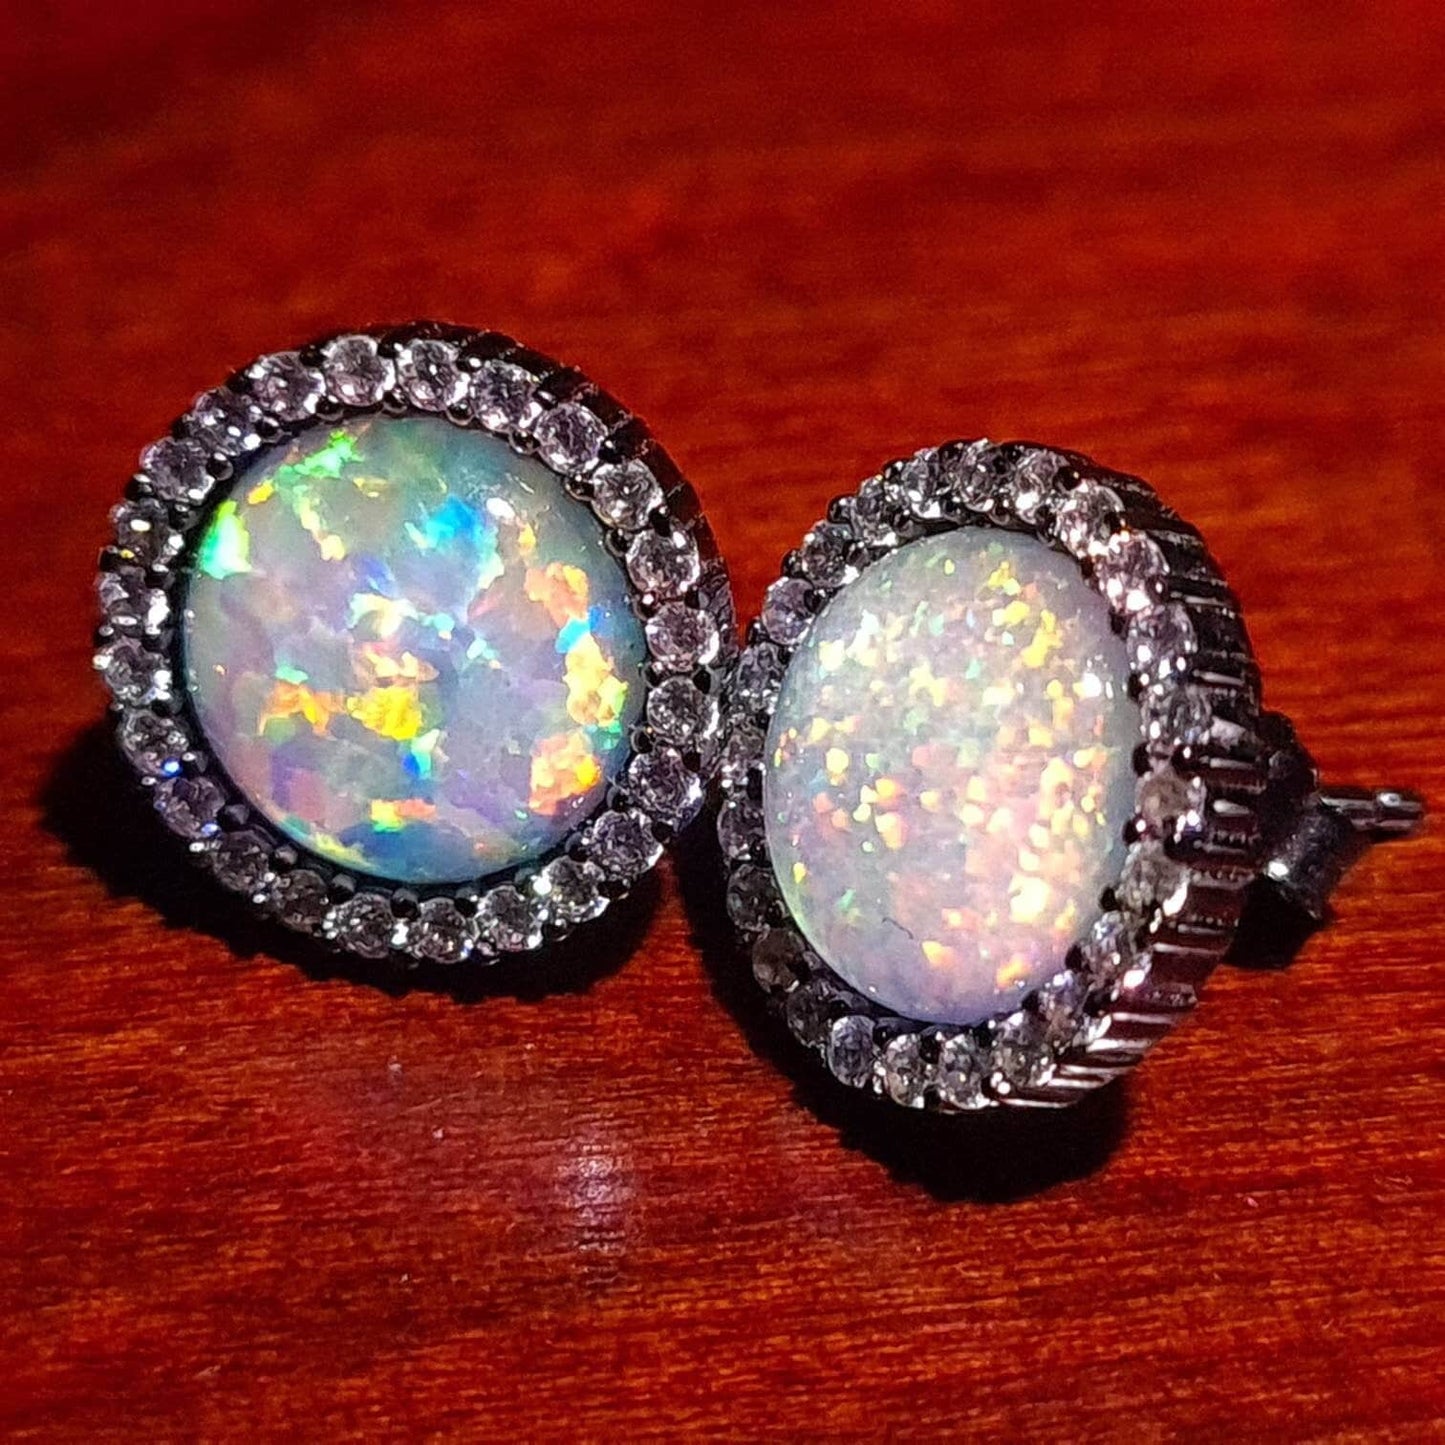 Ethiopian Fire Opal, Welo Opal, 12mm Round Shape CZ Stud Earrings in Black Rhodium 925 Sterling Silver AAA Fiery Opal Elegant Dainty Earring